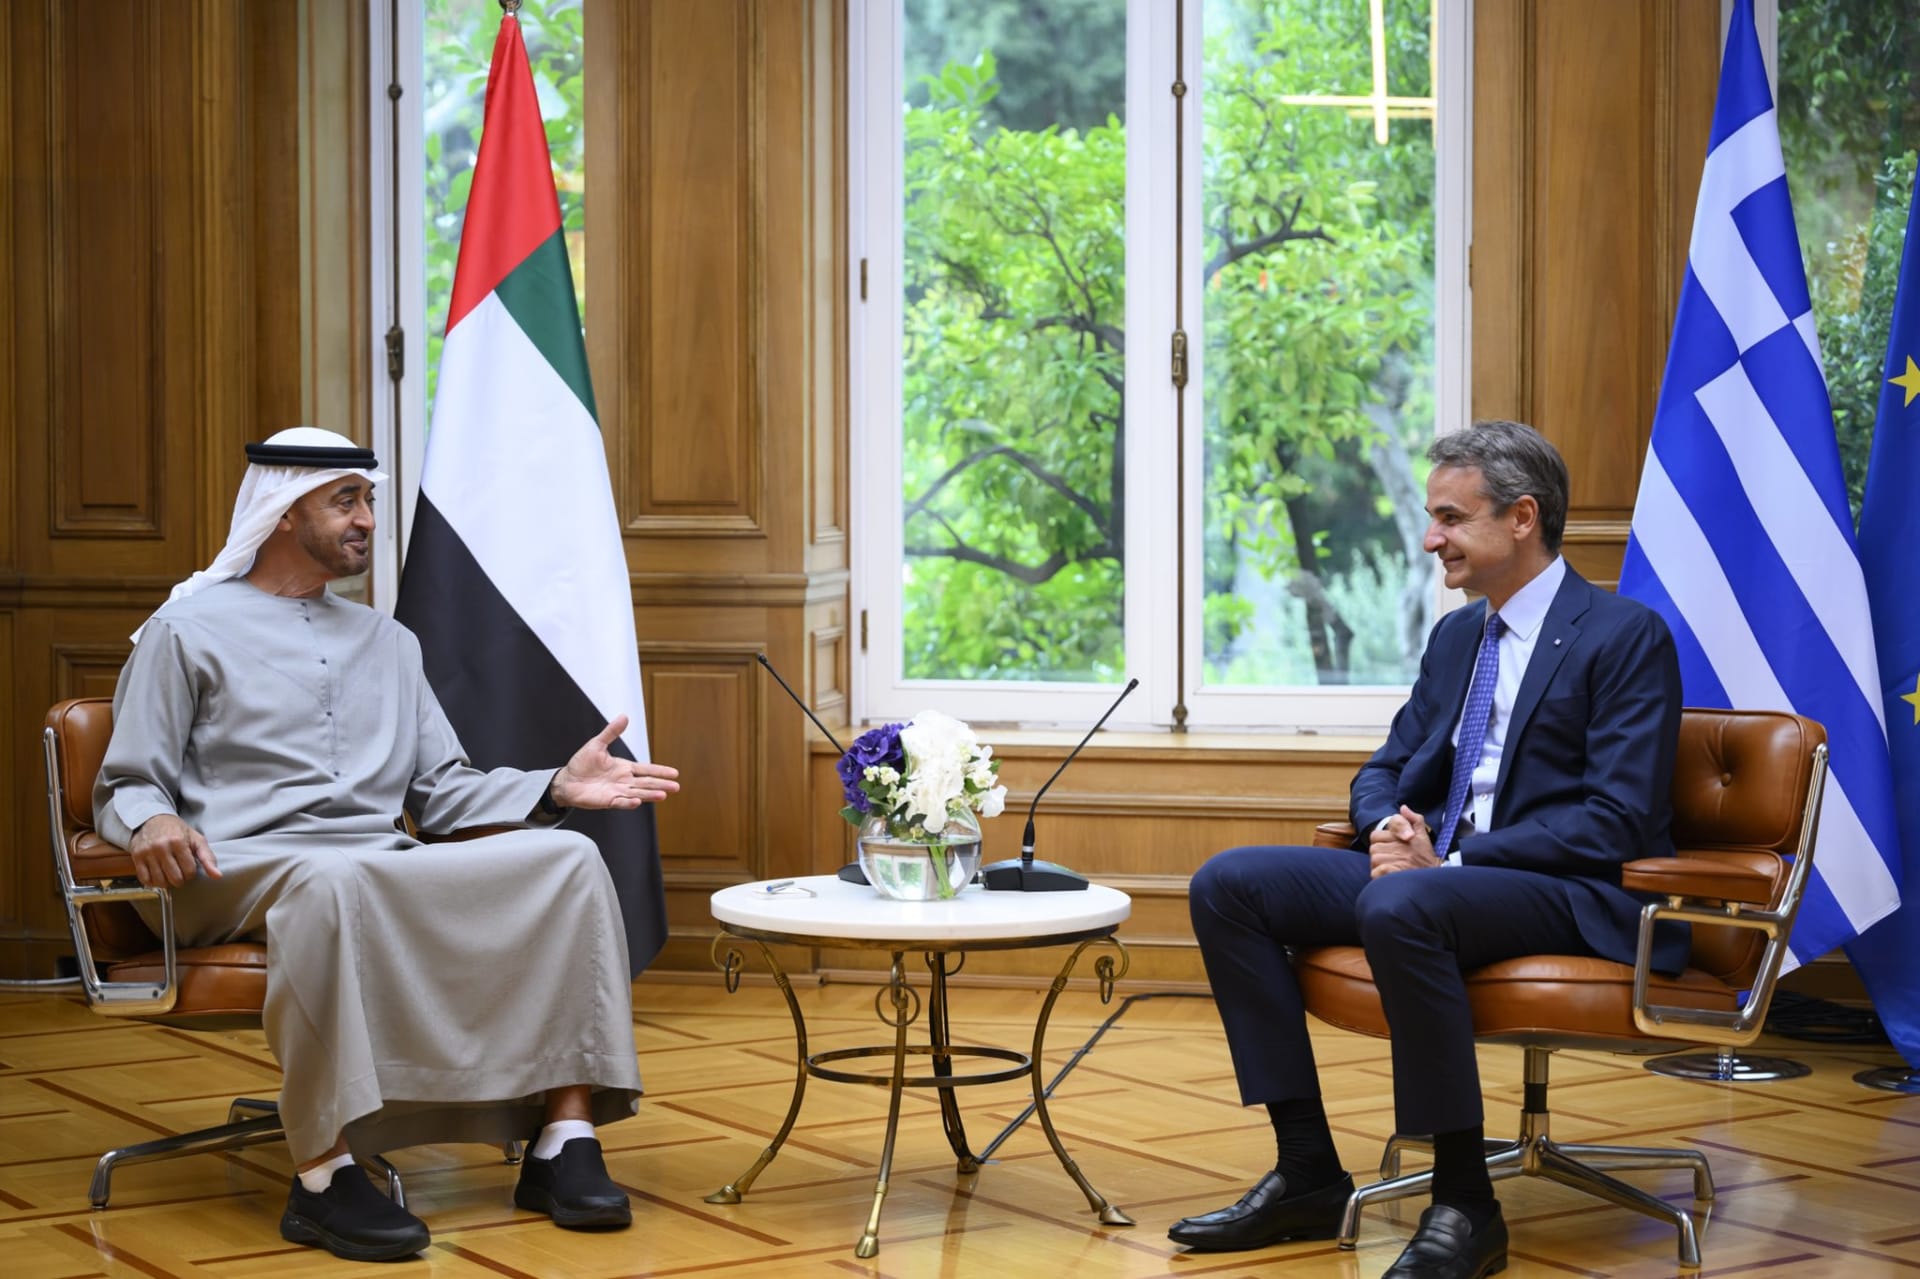 جانب  من لقاء  الشيخ محمد بن زايد آل نهيان رئيس الإمارات و رئيس الوزراء اليوناني كيرياكوس ميتسوتاكيس